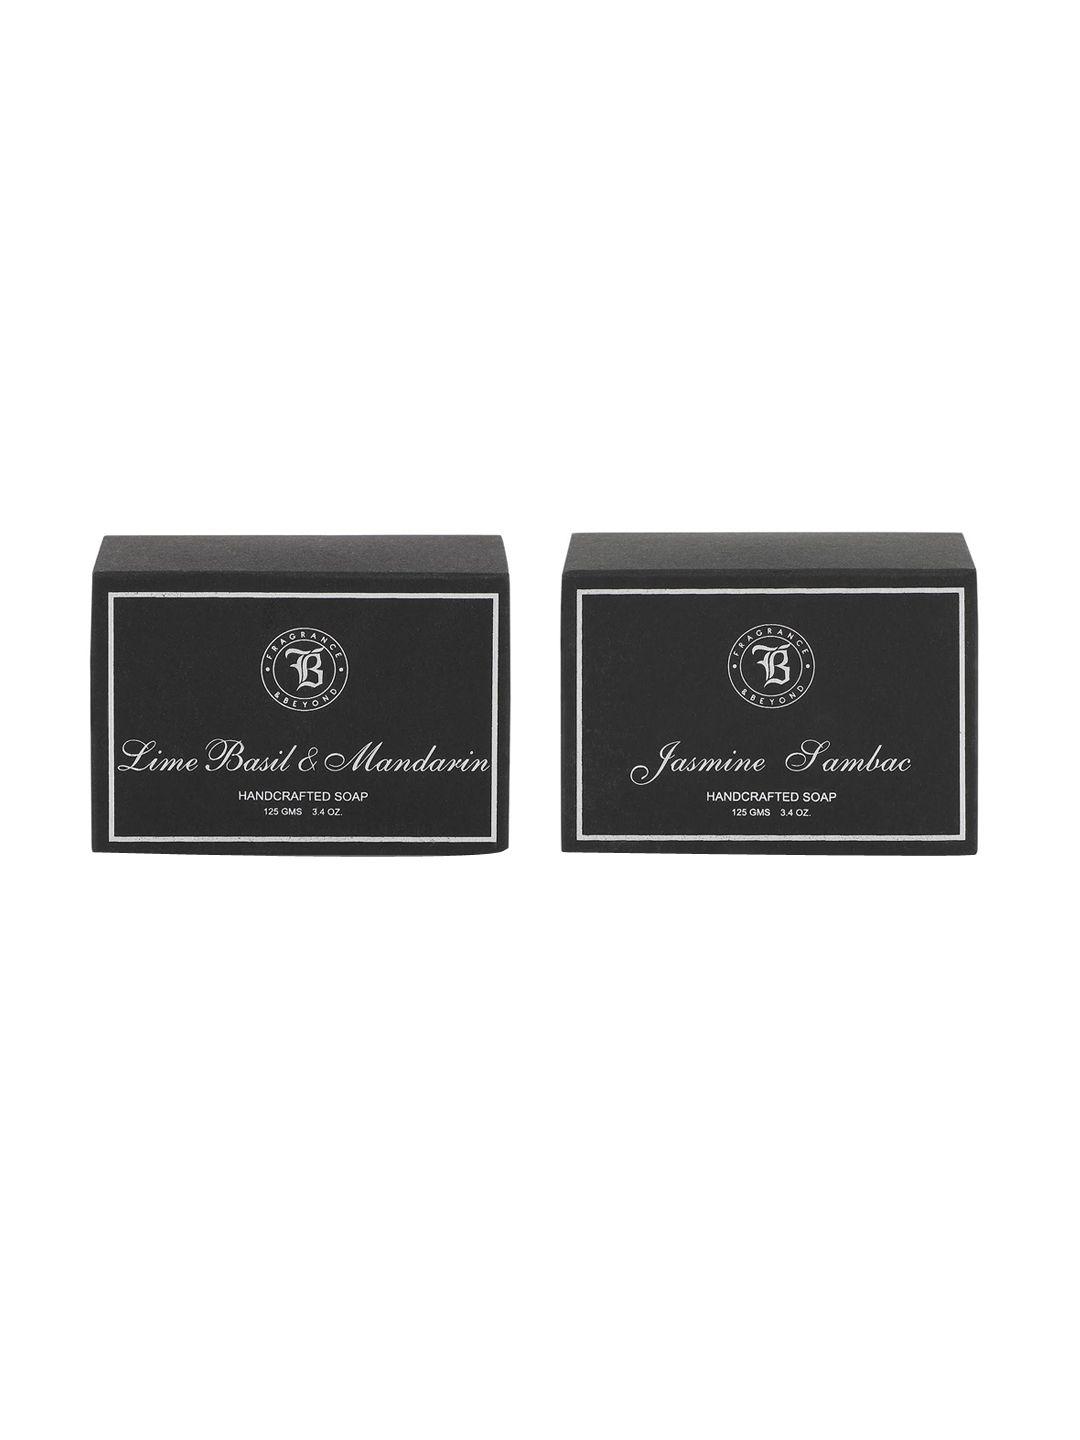 fragrance & beyond set of 2 lime basil & mandarin soaps - 125g each